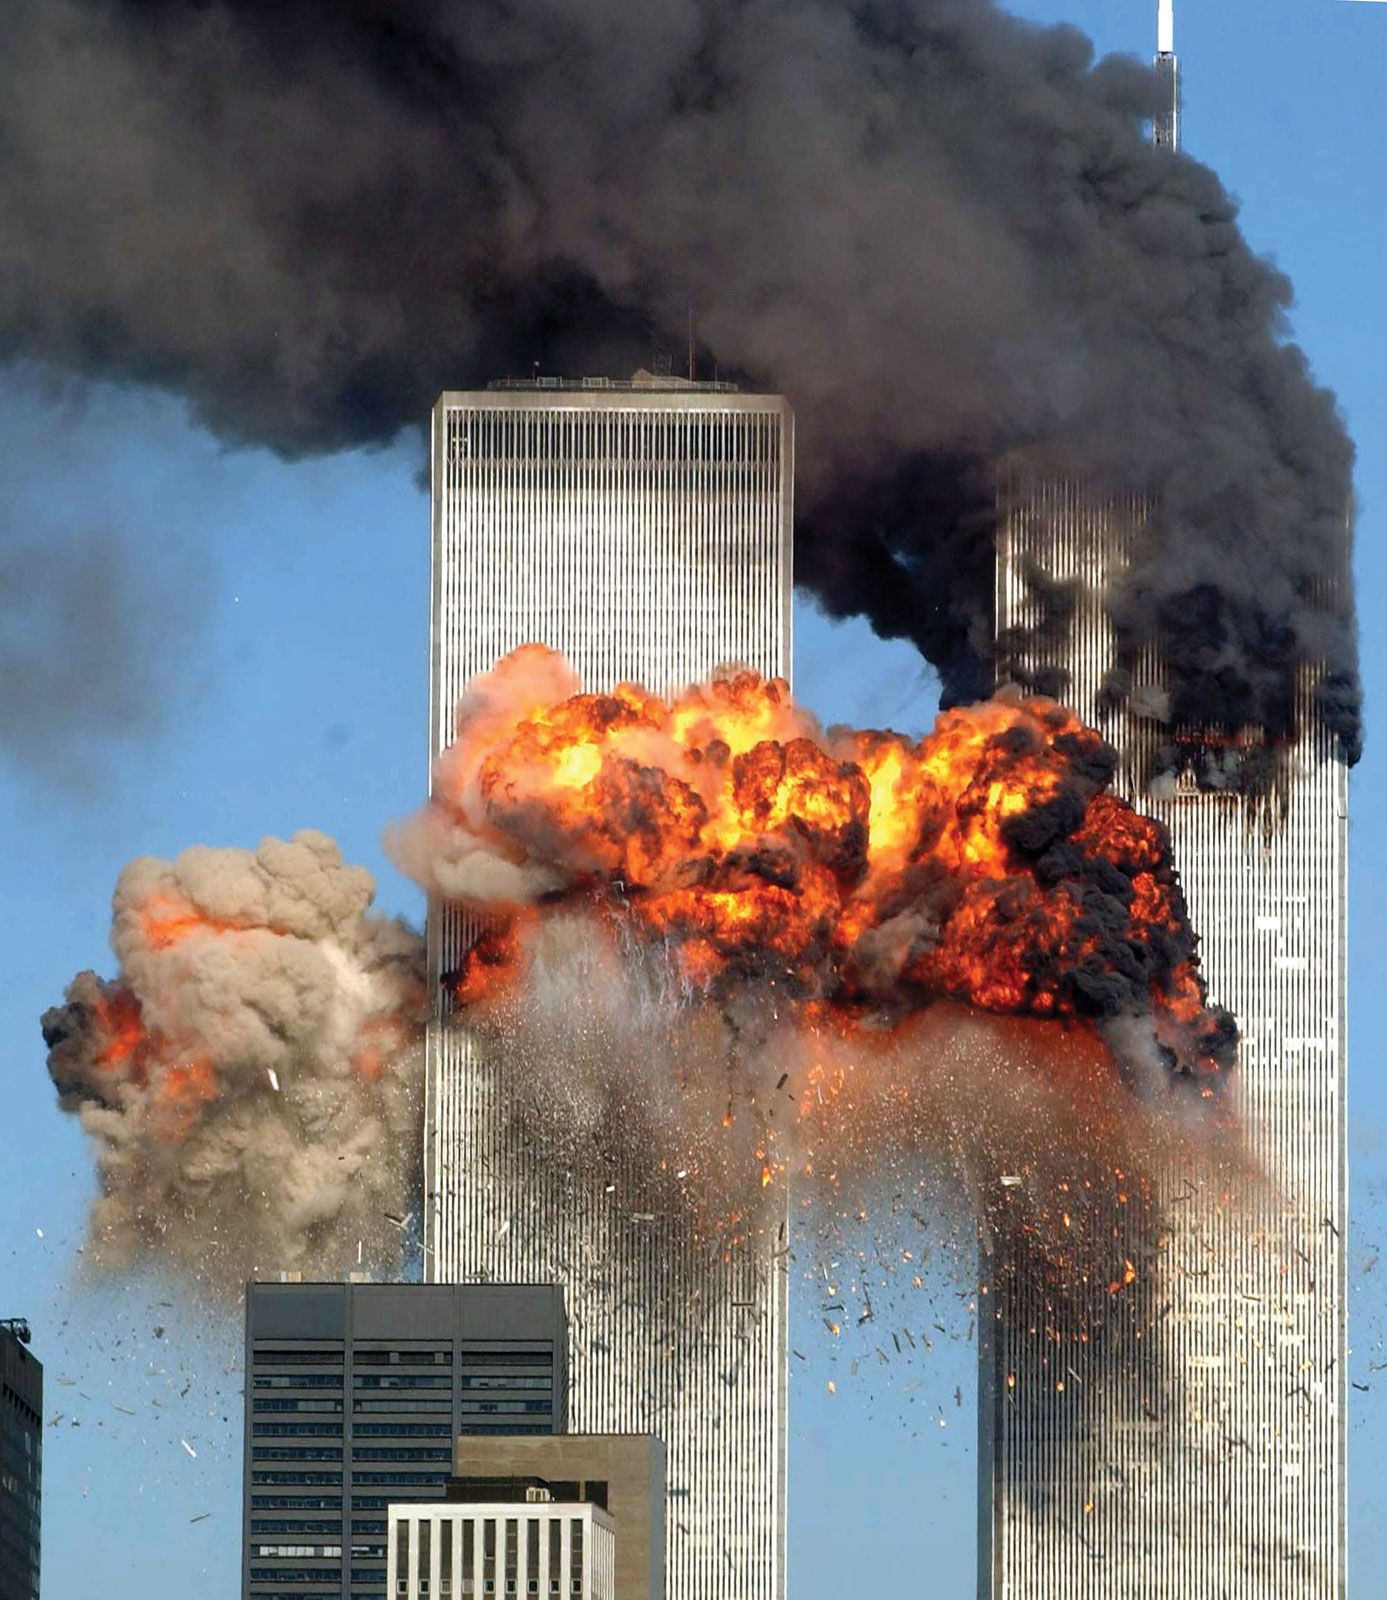 21st anniversary of 911 attacks